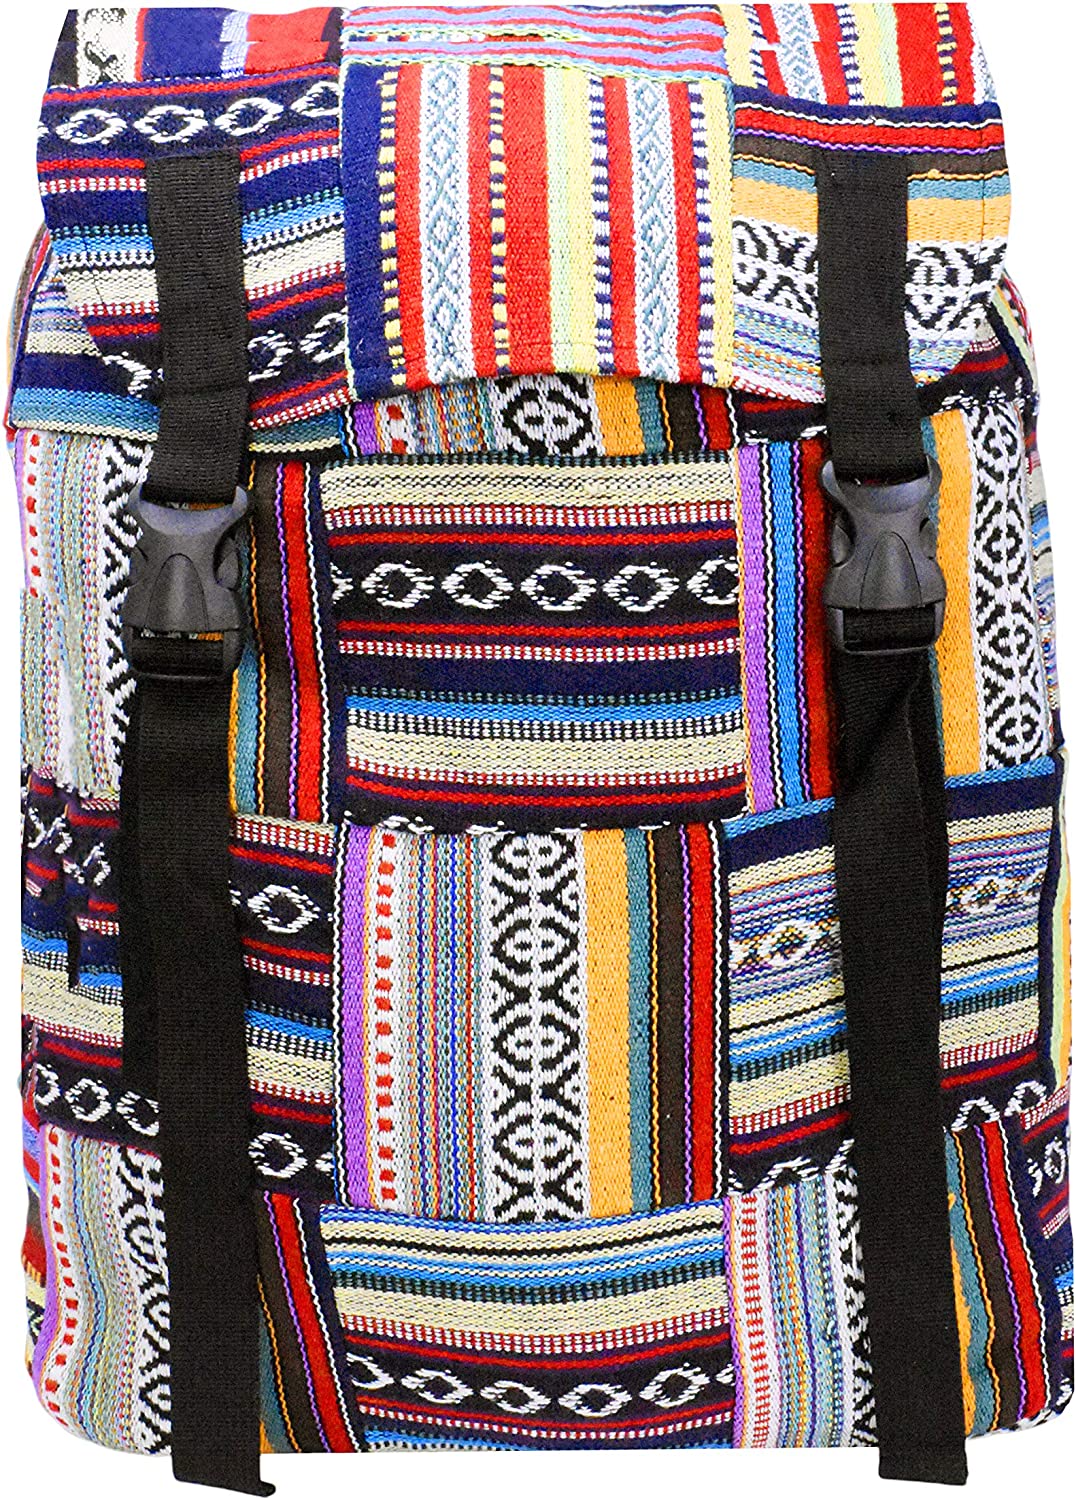 Boho Gypsy Backpack – Happy Vida Designs Malapascua